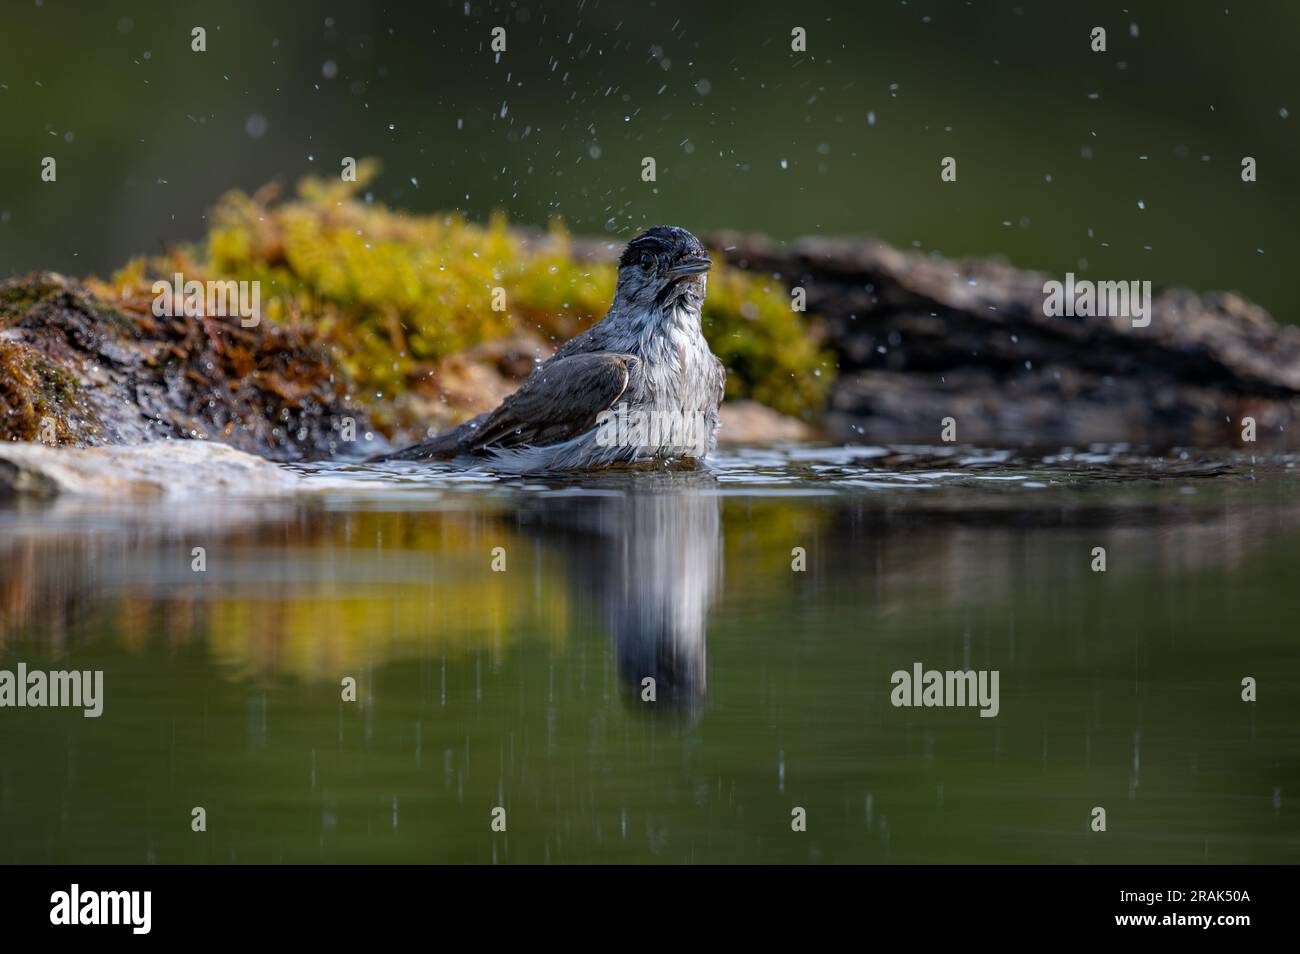 Männlicher Blackcap-Vogel, der ein Bad in einem Wasserbecken mit Reflexion nimmt Stockfoto